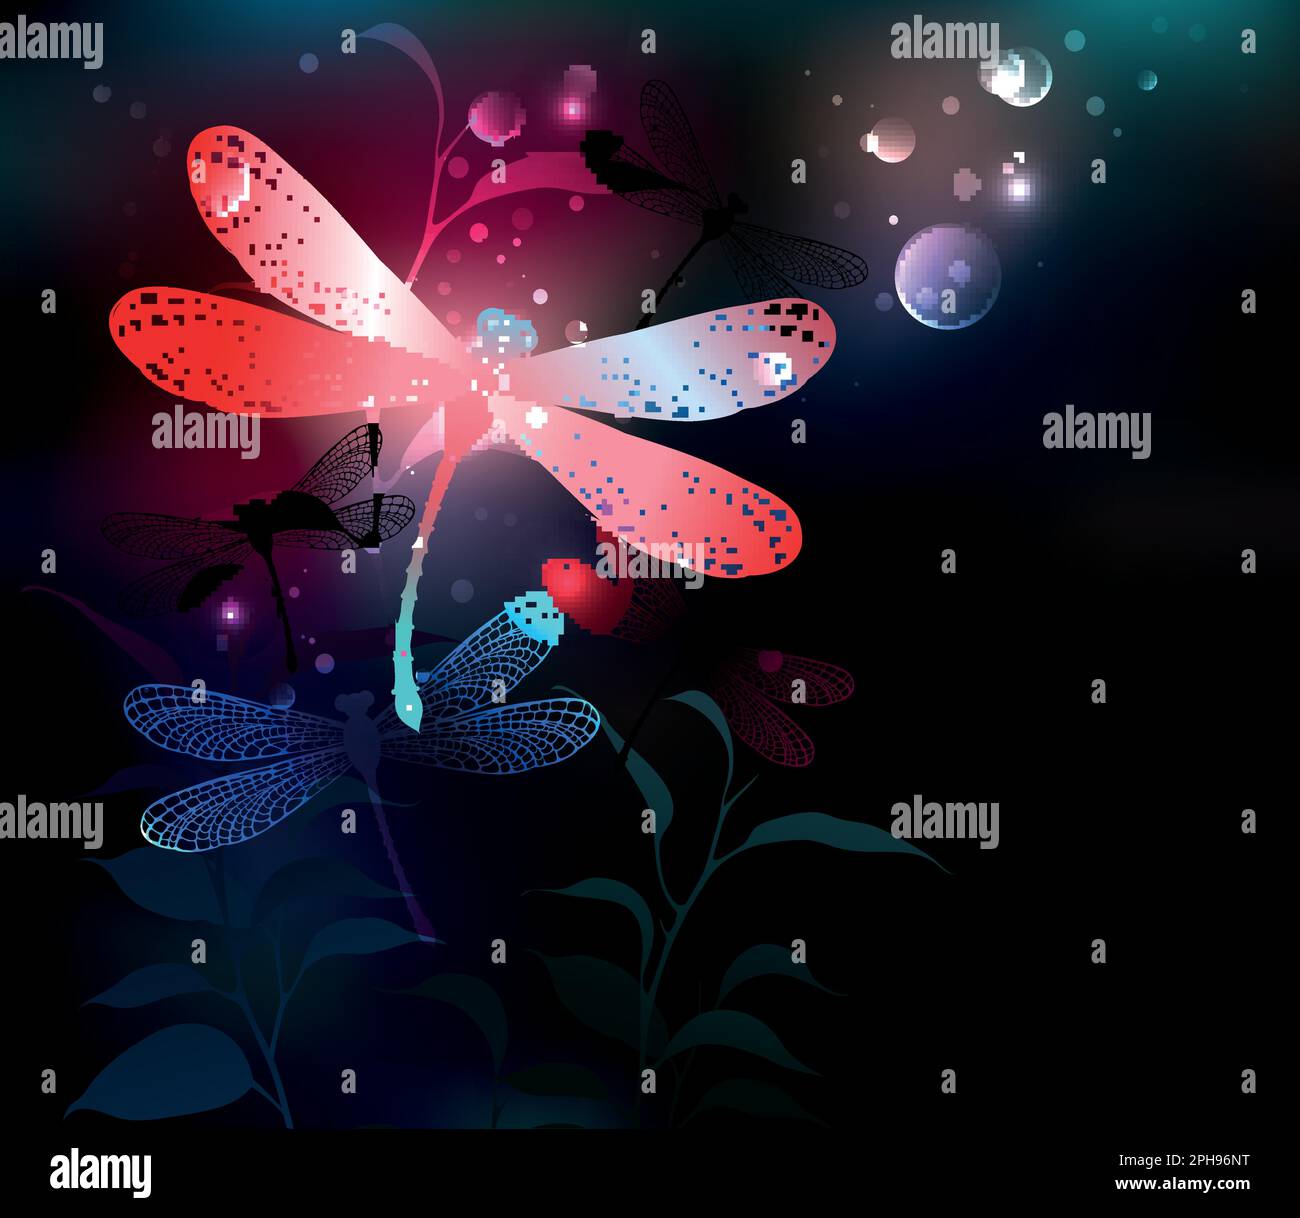 Libellule rouge éclatant, volant, avec ailes transparentes et détaillées sur fond sombre, nocturne, lumineux avec plantes tropicales et lucioles. Red drago Illustration de Vecteur